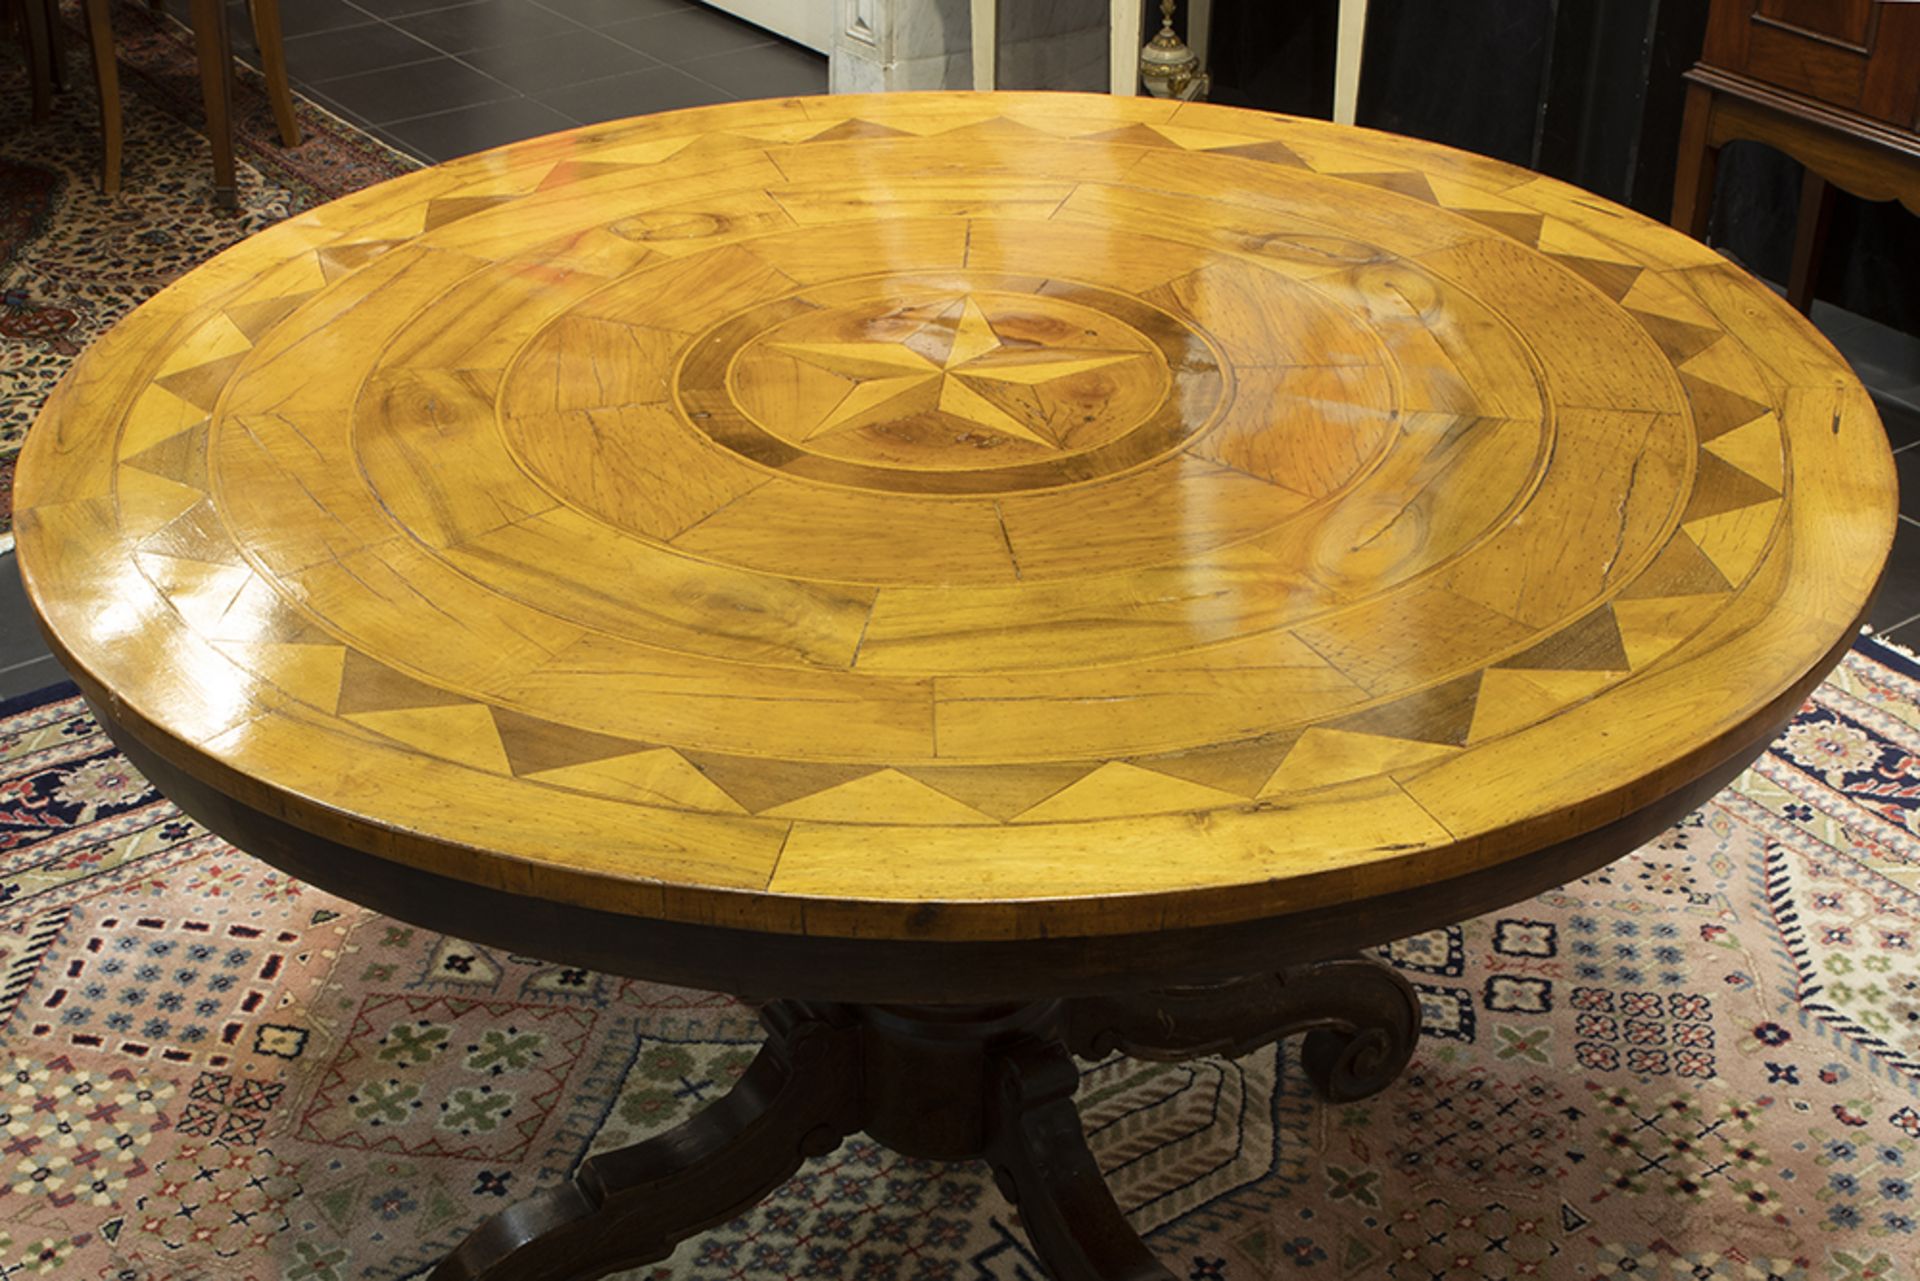 19th Cent. Biedermeier table in walnut with a round marquetry top || Negentiende eeuwse - Bild 2 aus 2